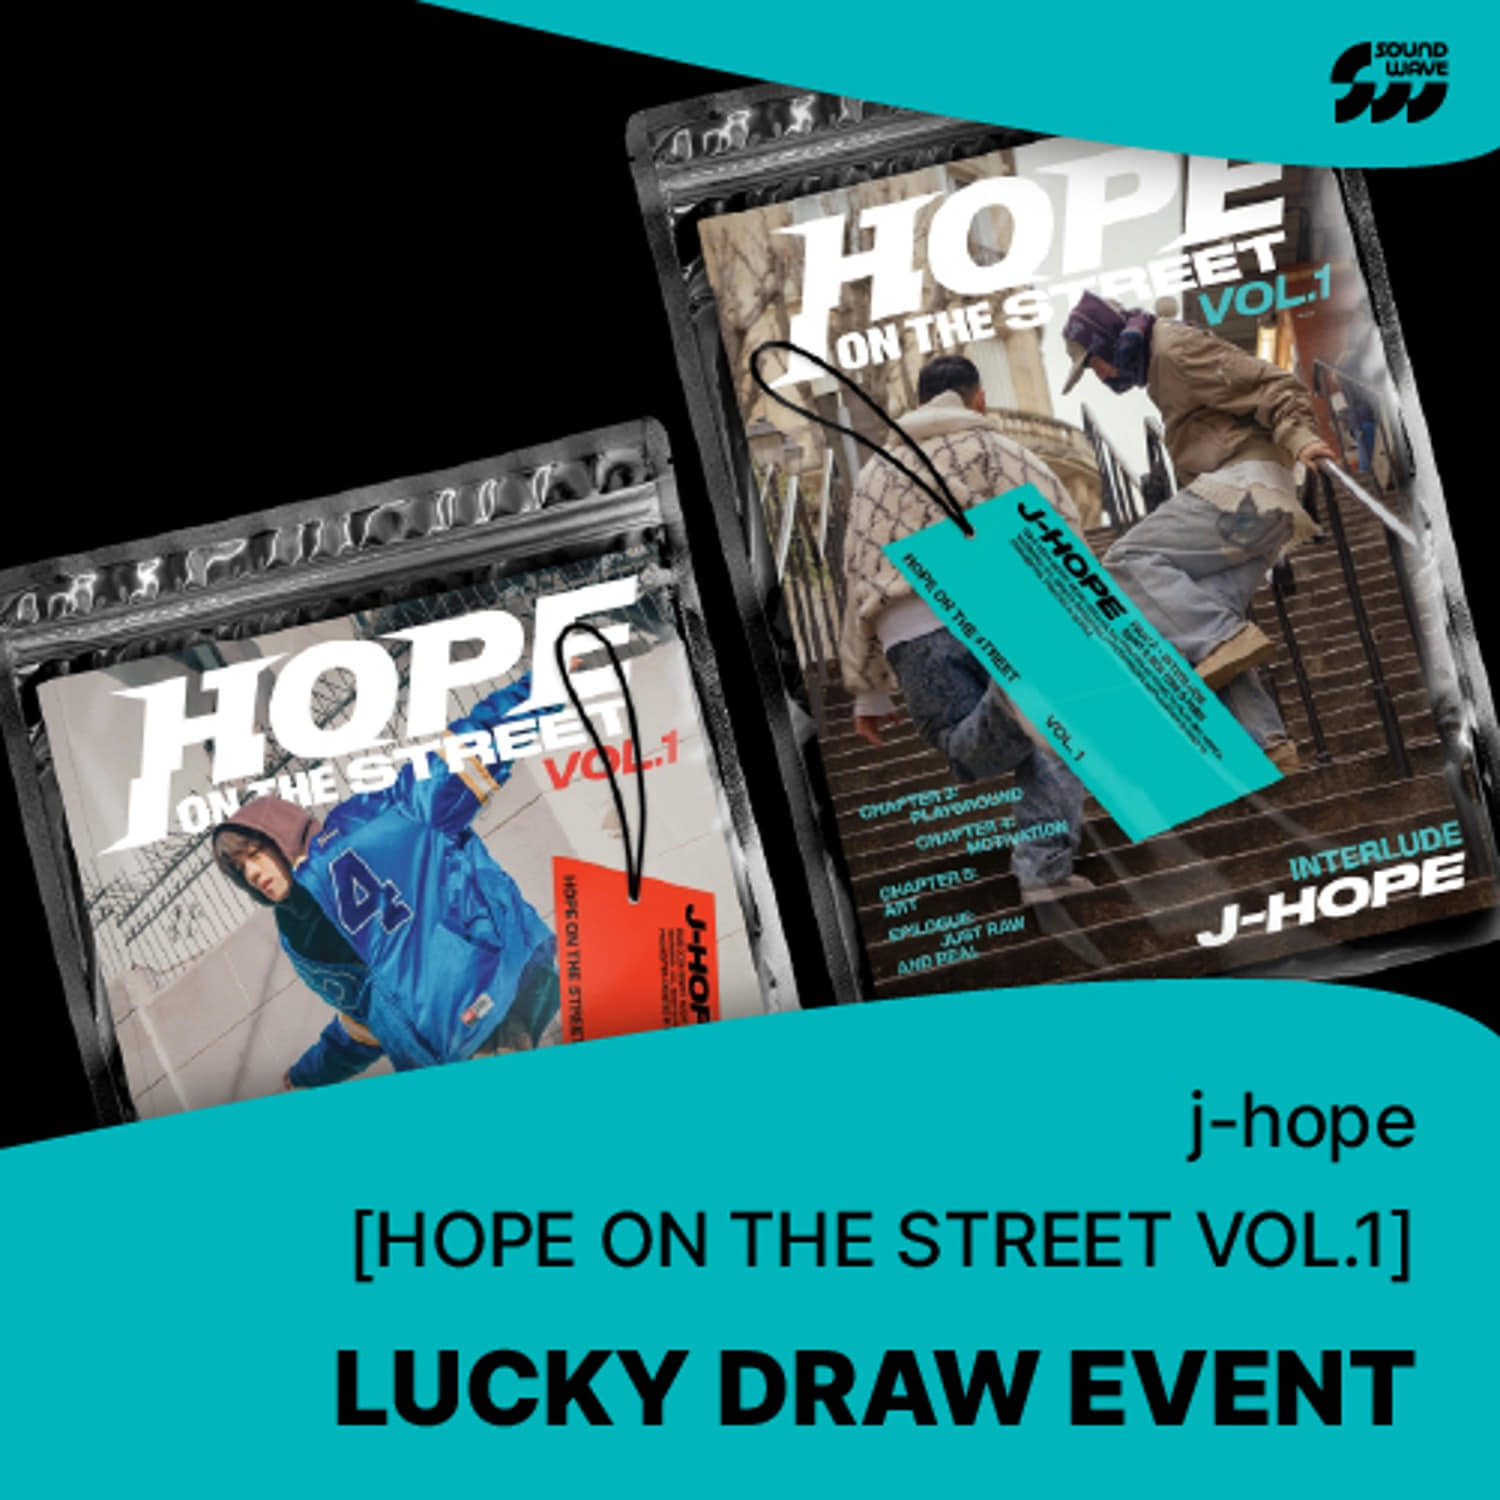 [럭키드로우] 제이홉(J-HOPE) - [HOPE ON THE STREET VOL.1] (랜덤) **앨범 세트(2장) 구매시 LUCKY DRAW 3회 참여